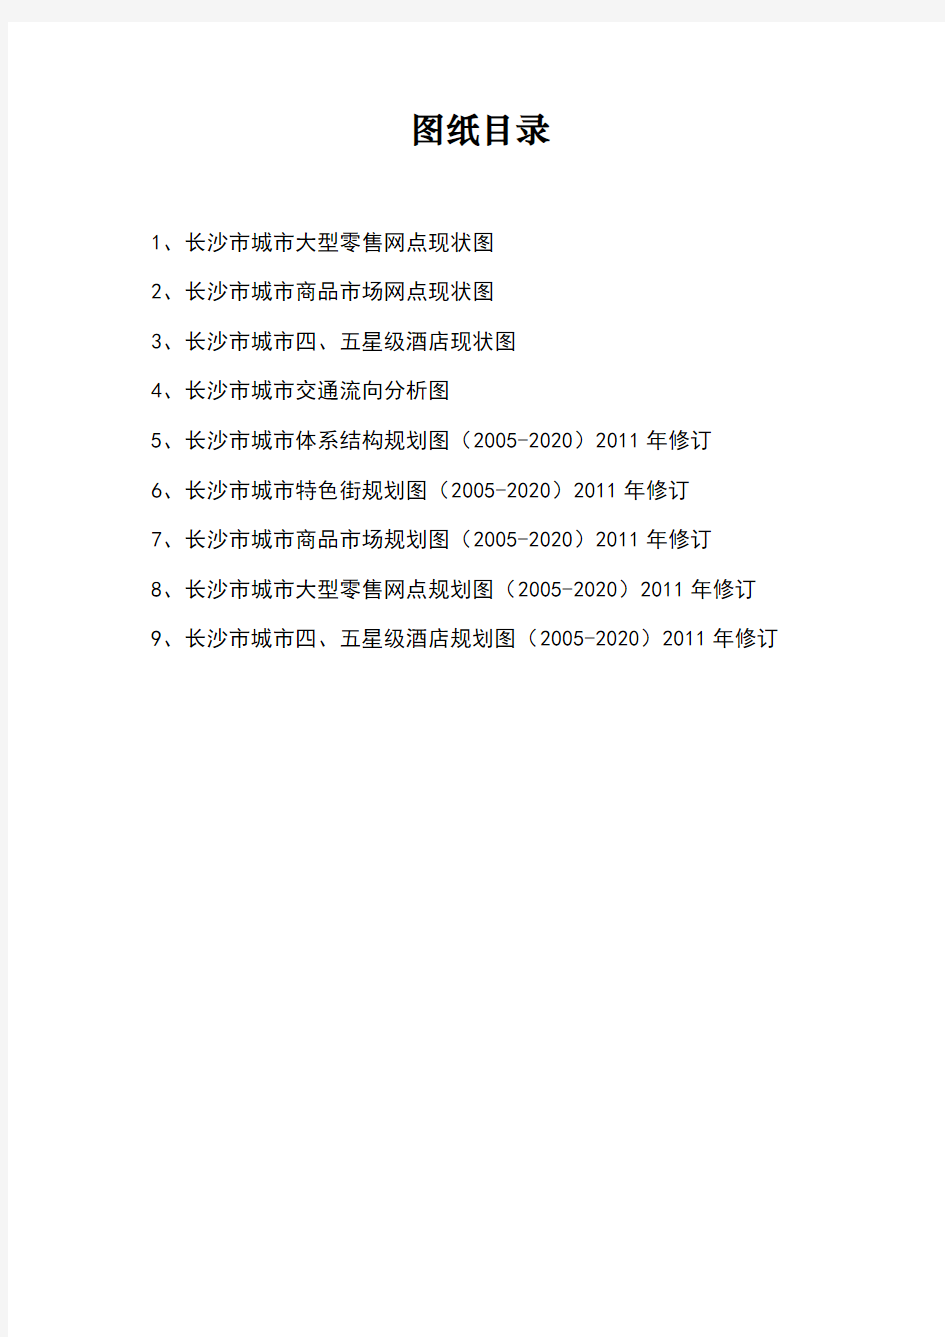 长沙市城市商业网点布局规划(2005-2020)》(2011年修订